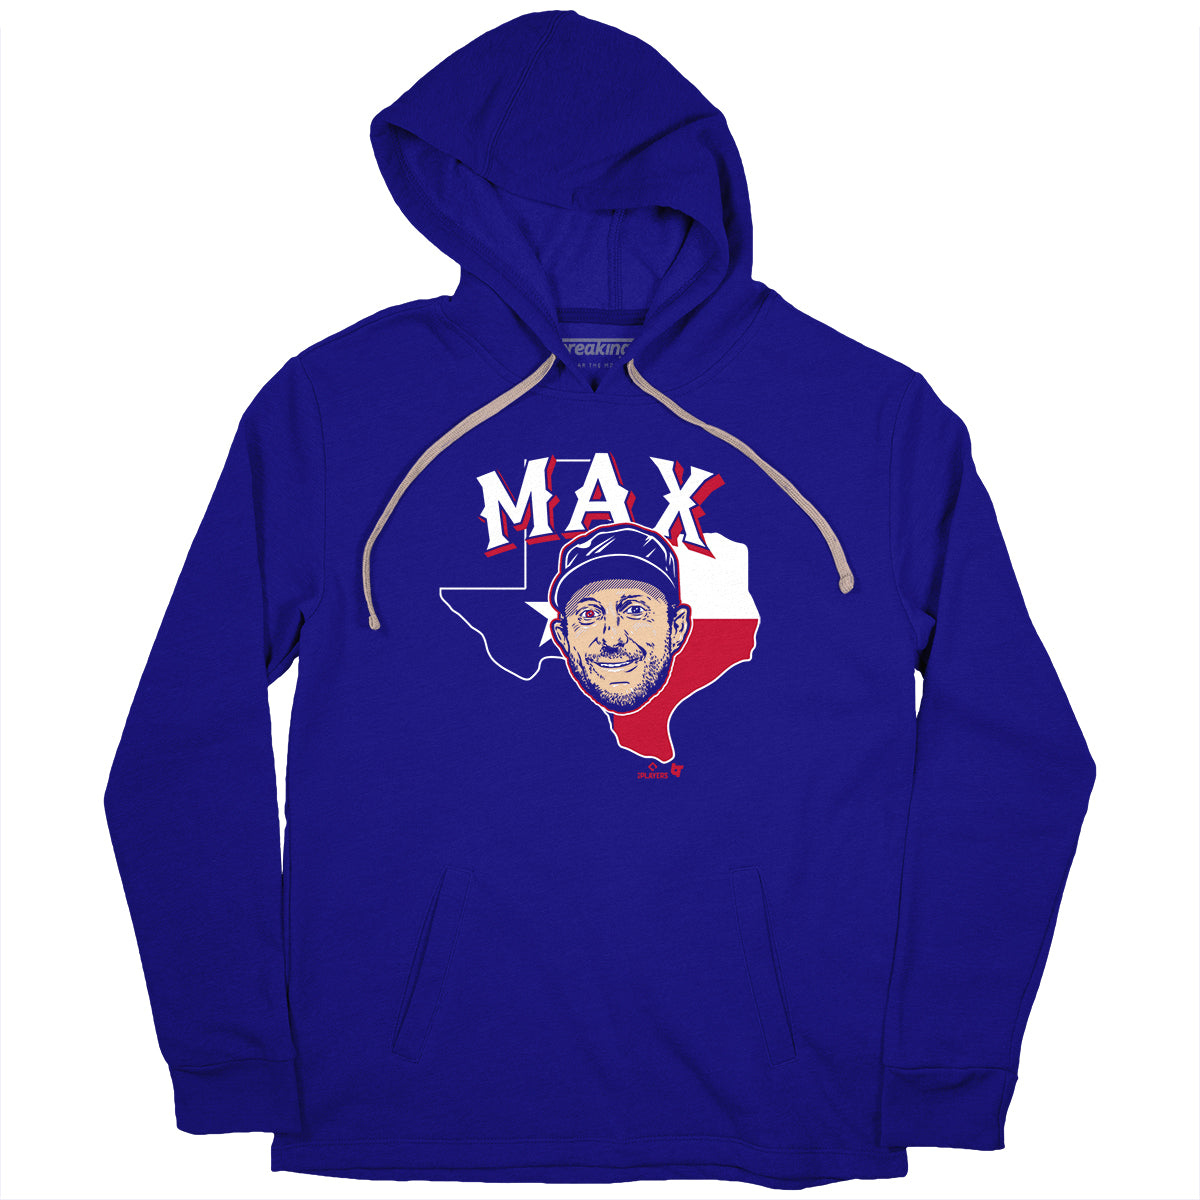 Max Scherzer The Eyes of Texas T-Shirt - MLBPA Licensed - BreakingT